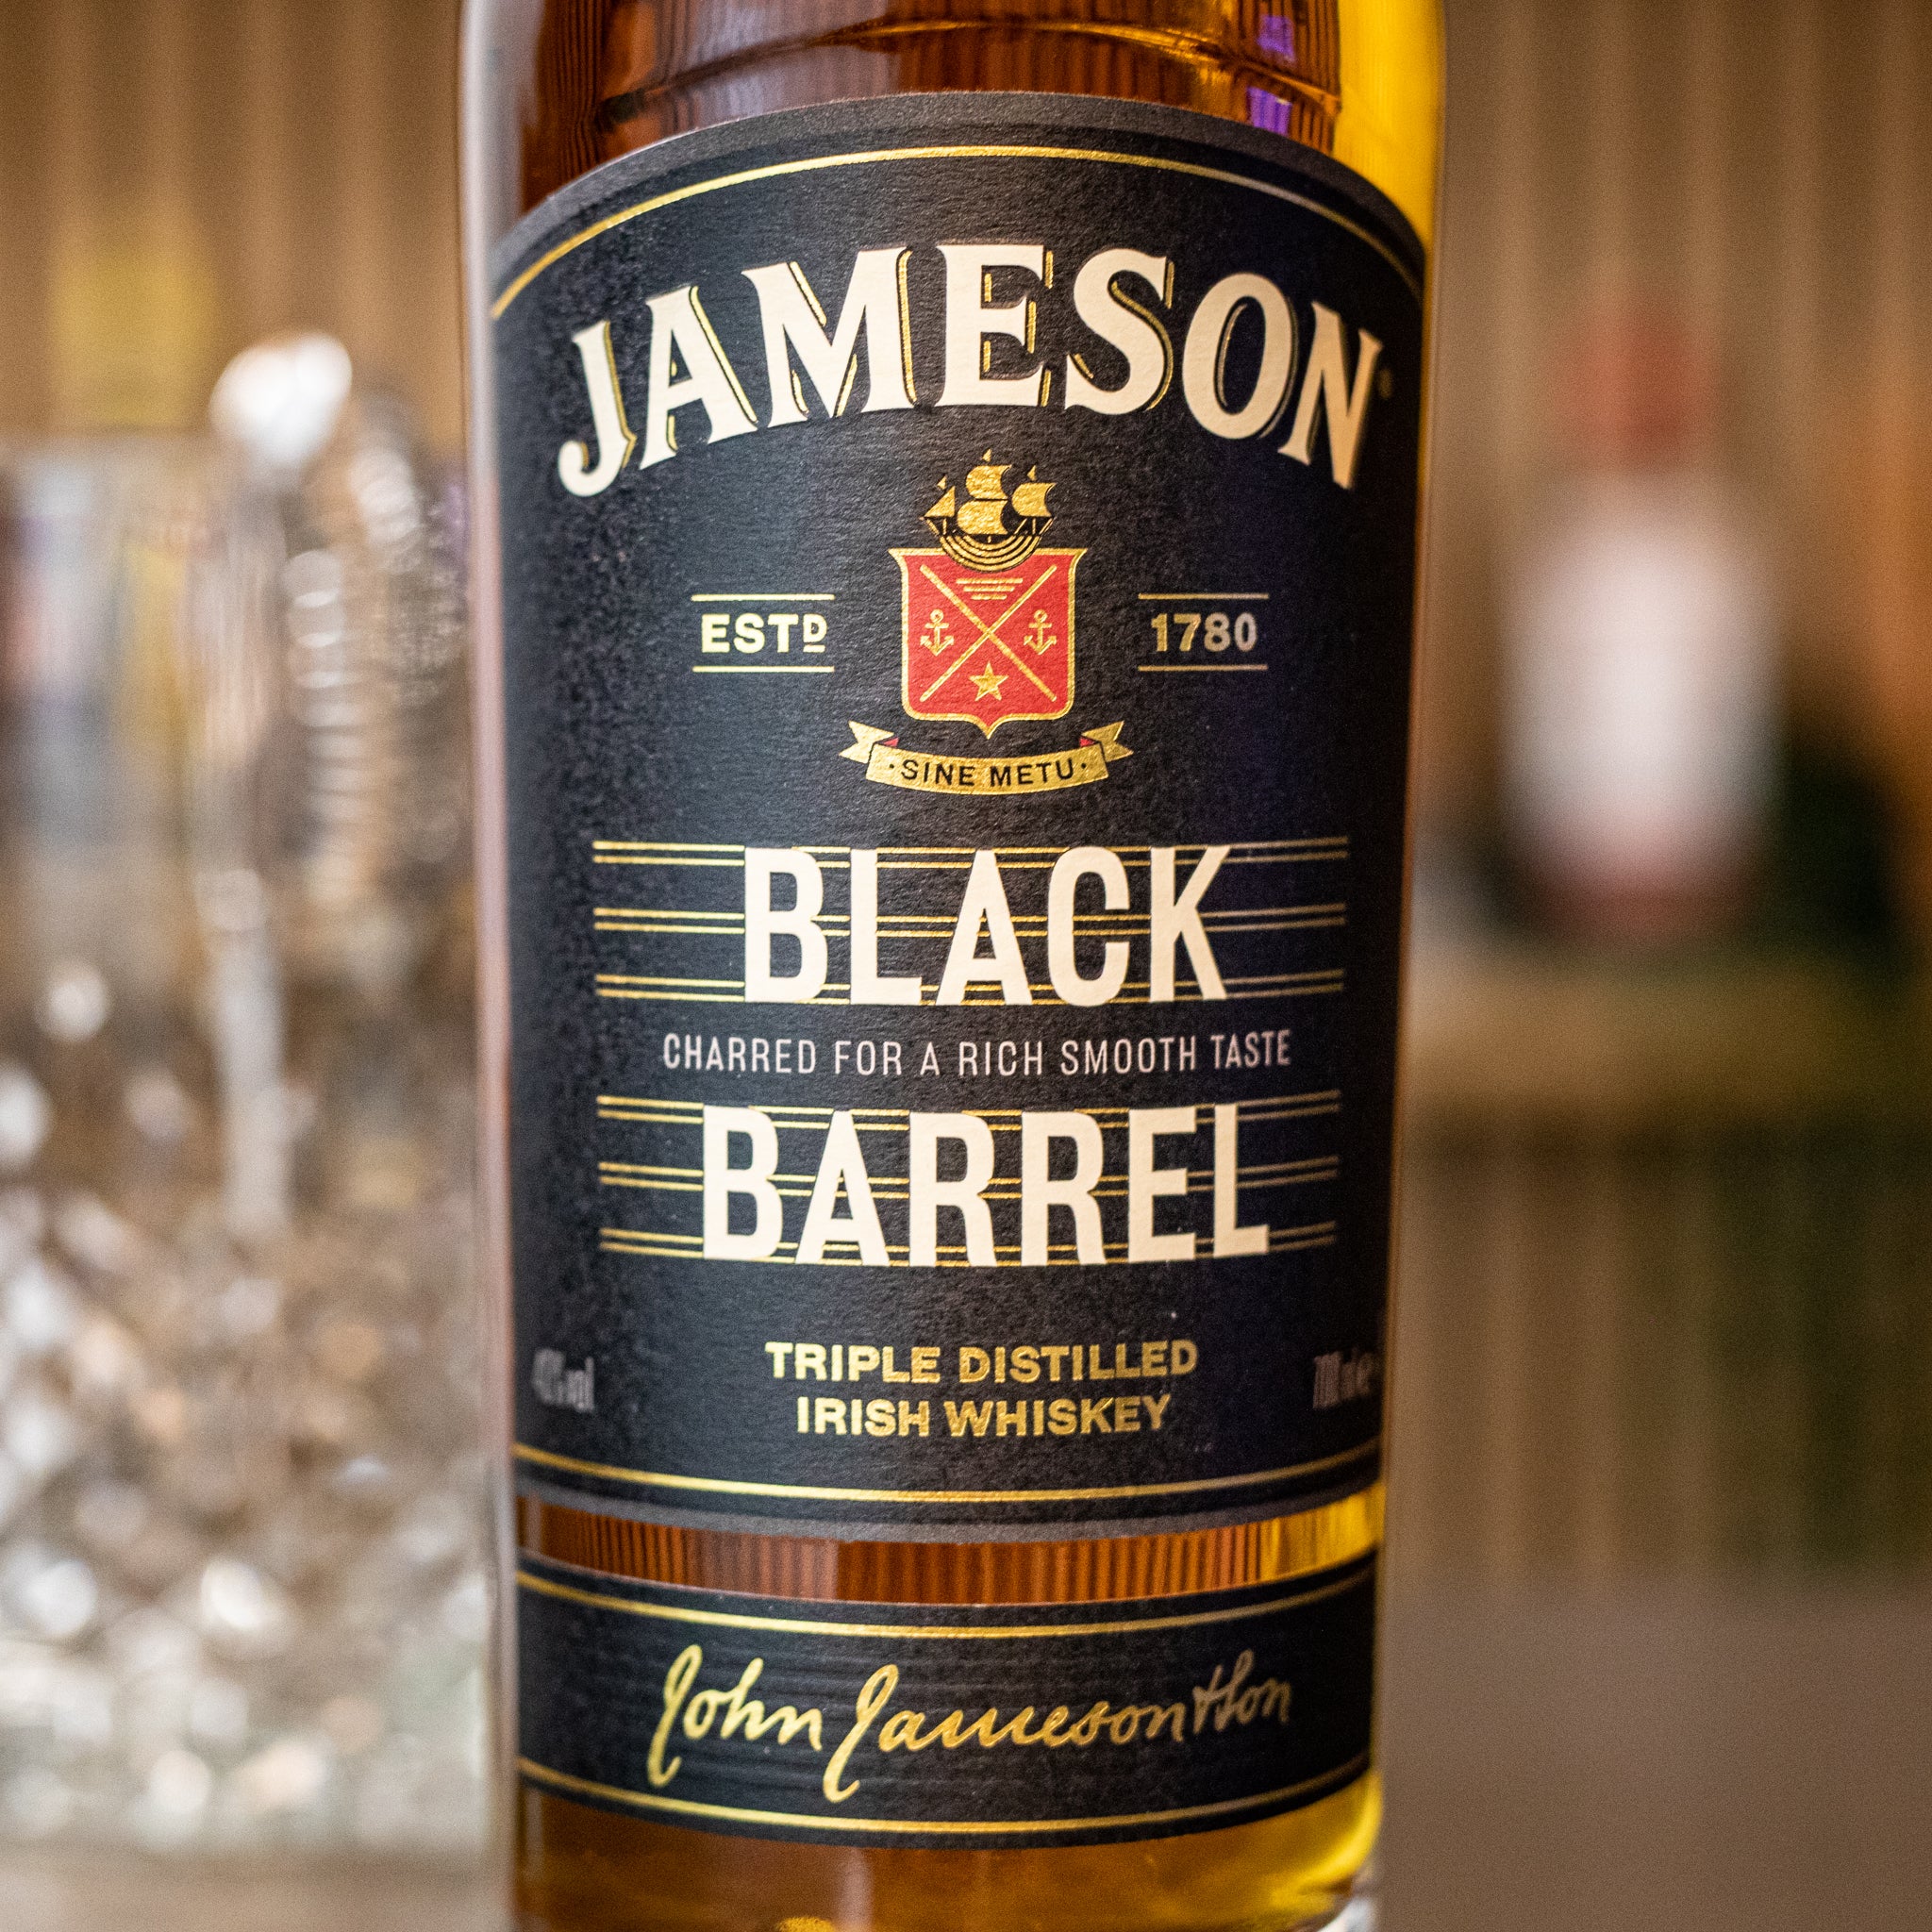 Jameson Irish Whiskey Black Barrel